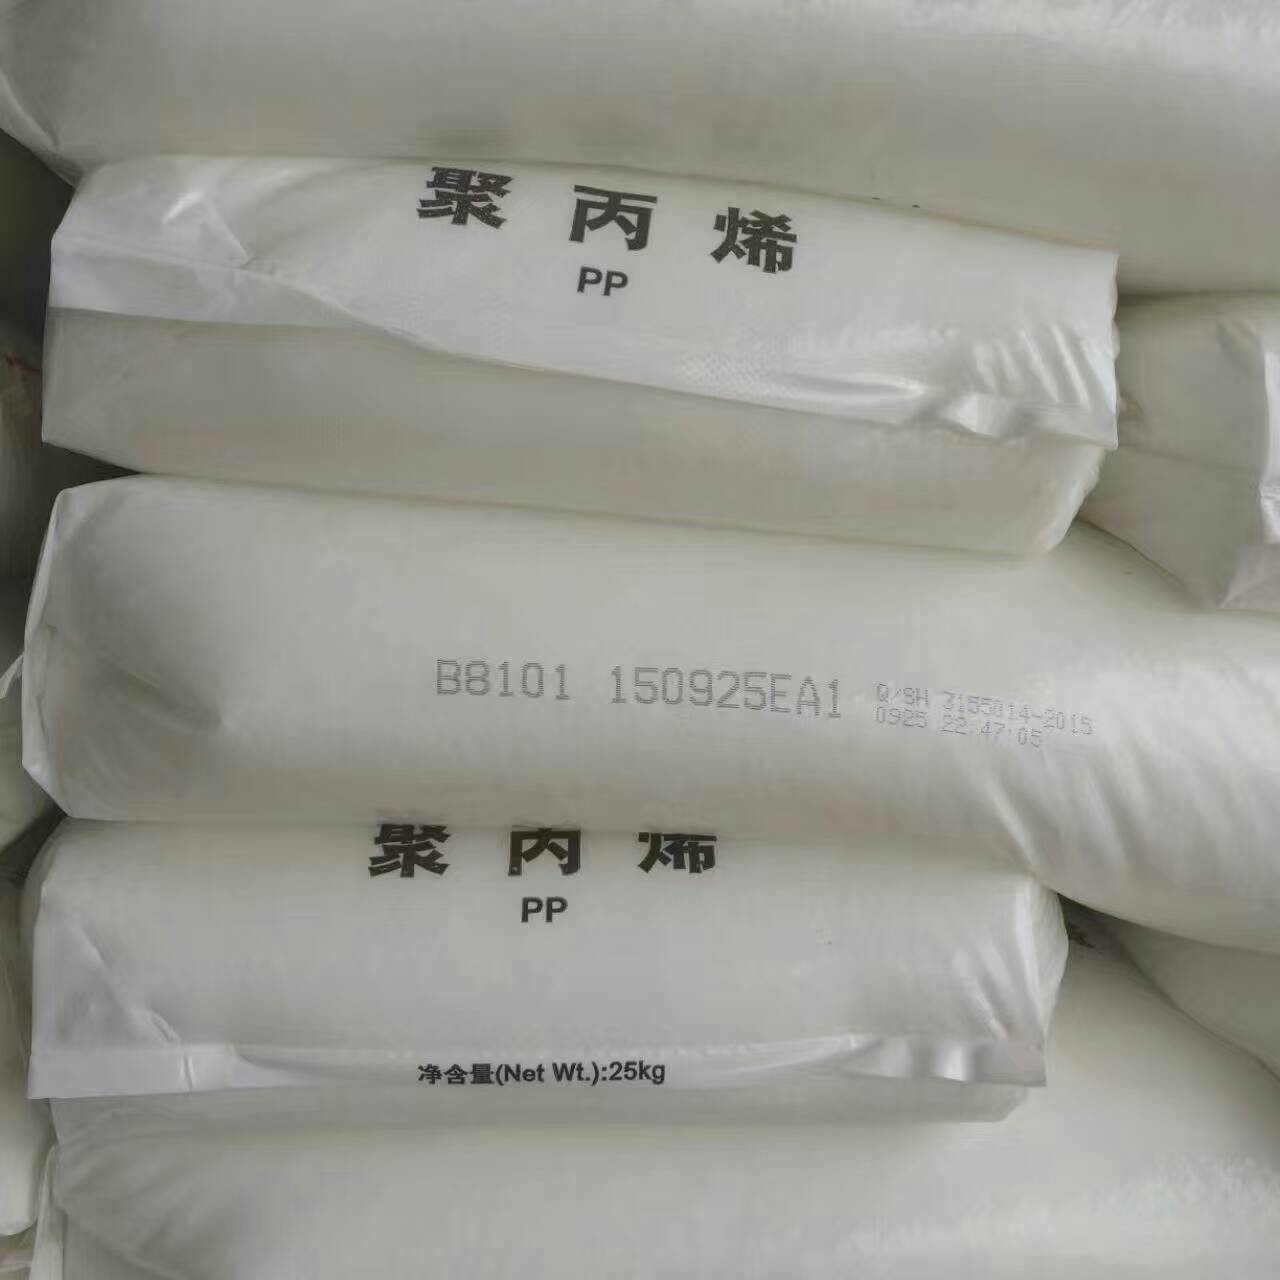 中国石化品牌/燕山石化:B8101